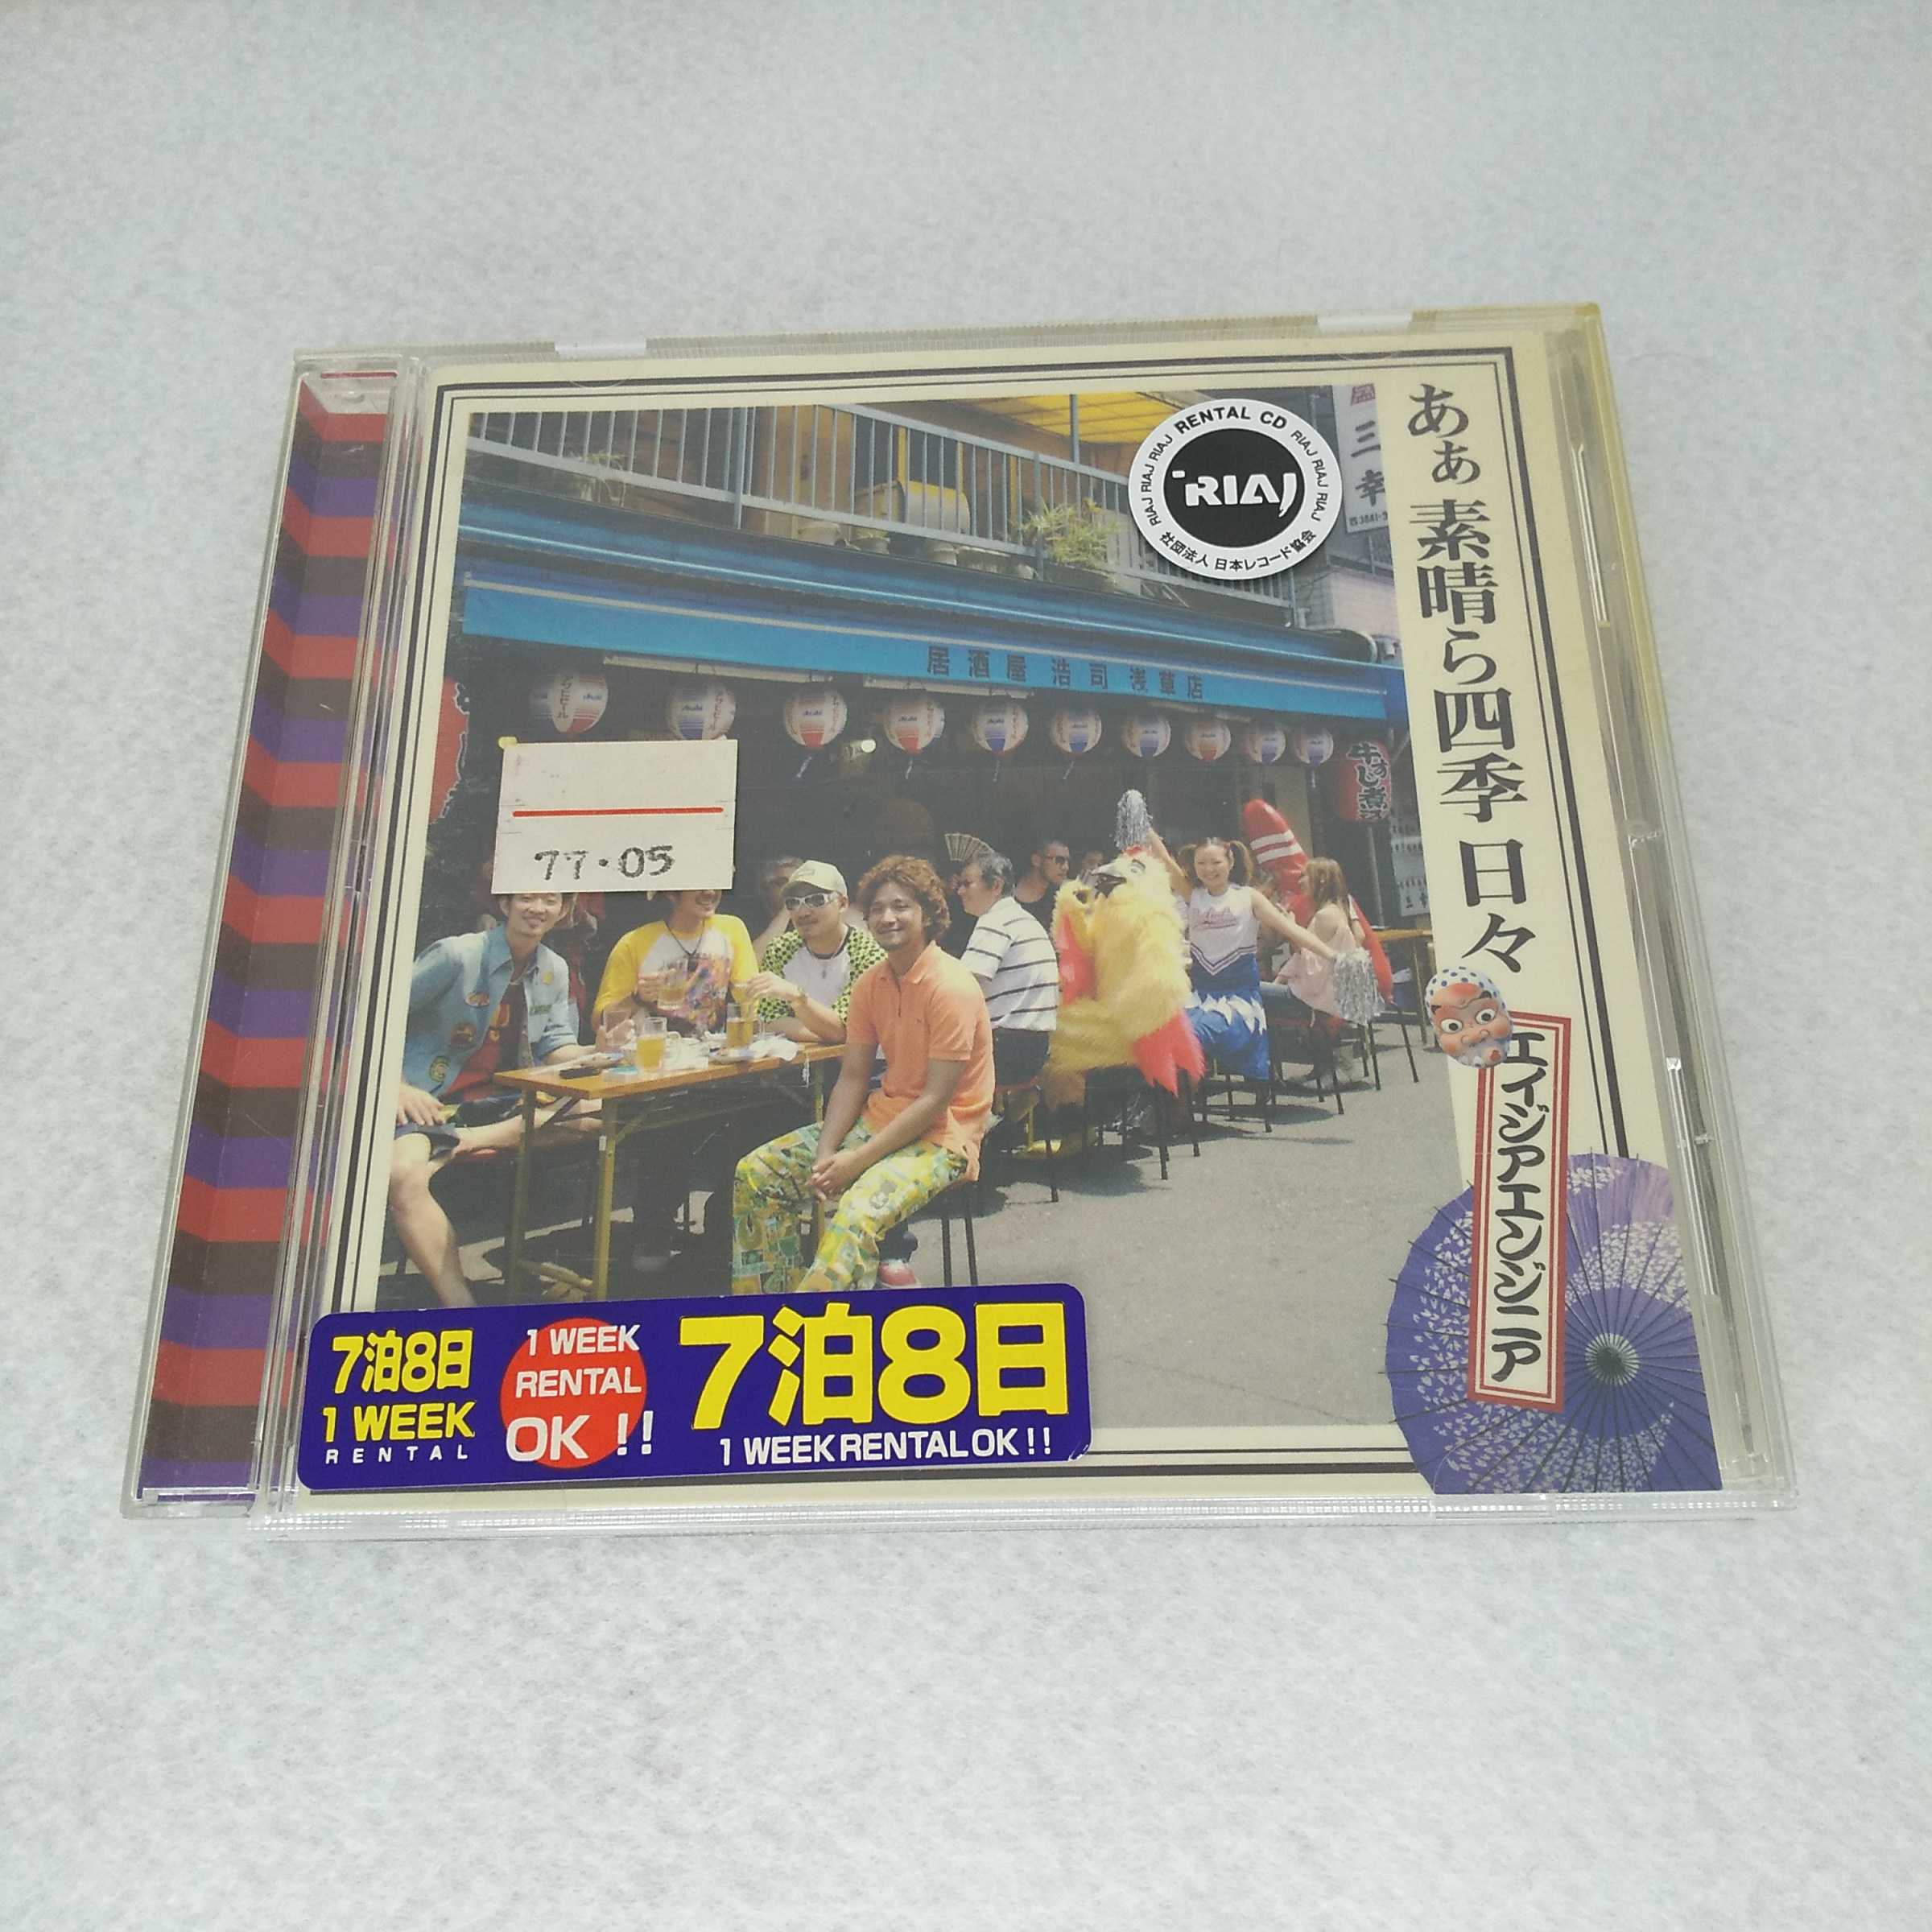 AC12874【中古】 【CD】 あぁ 素晴ら四季日々/エイジアエンジニア